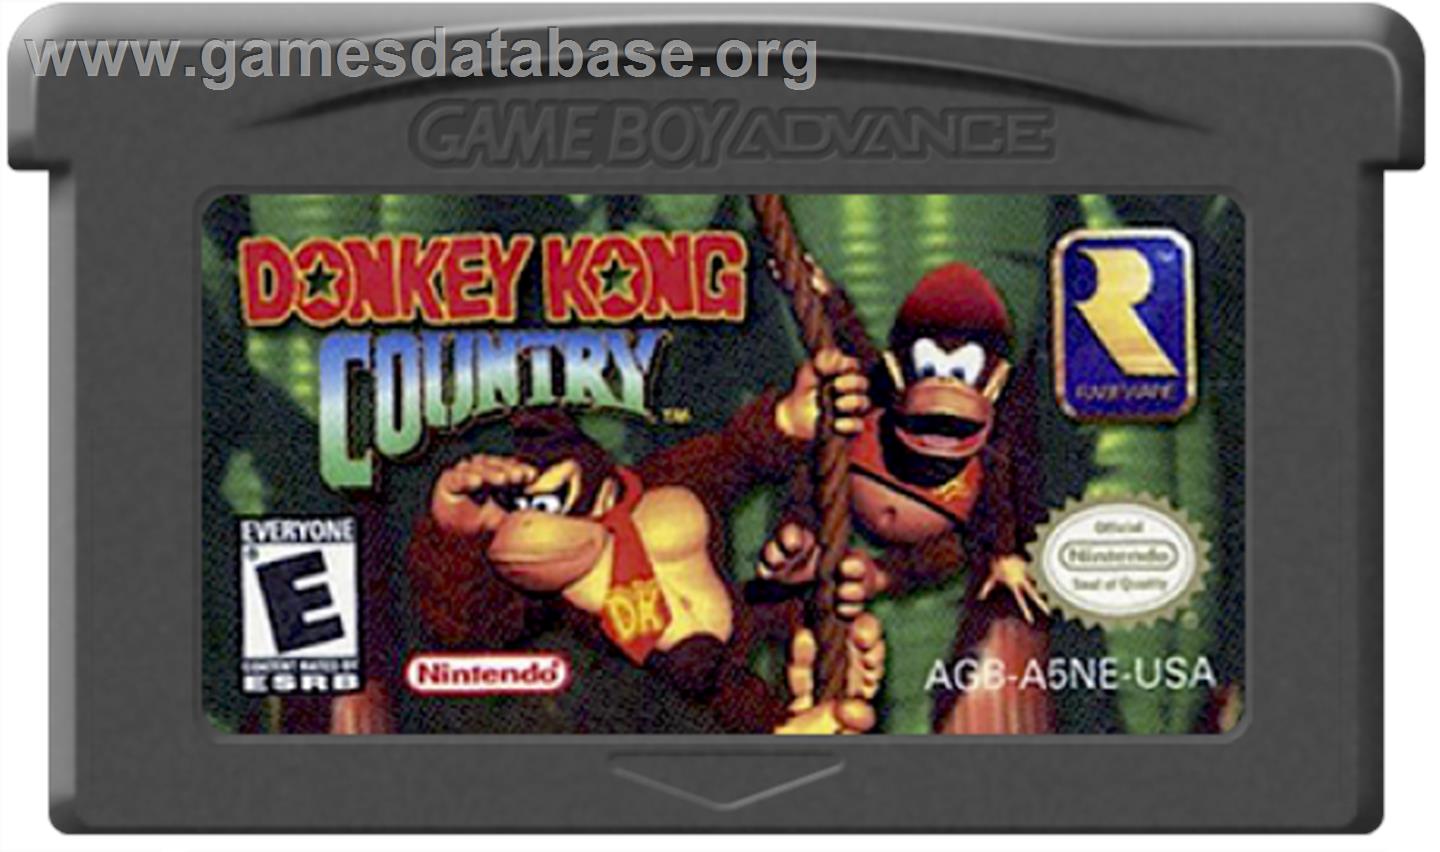 Donkey Kong Country - Nintendo Game Boy Advance - Artwork - Cartridge